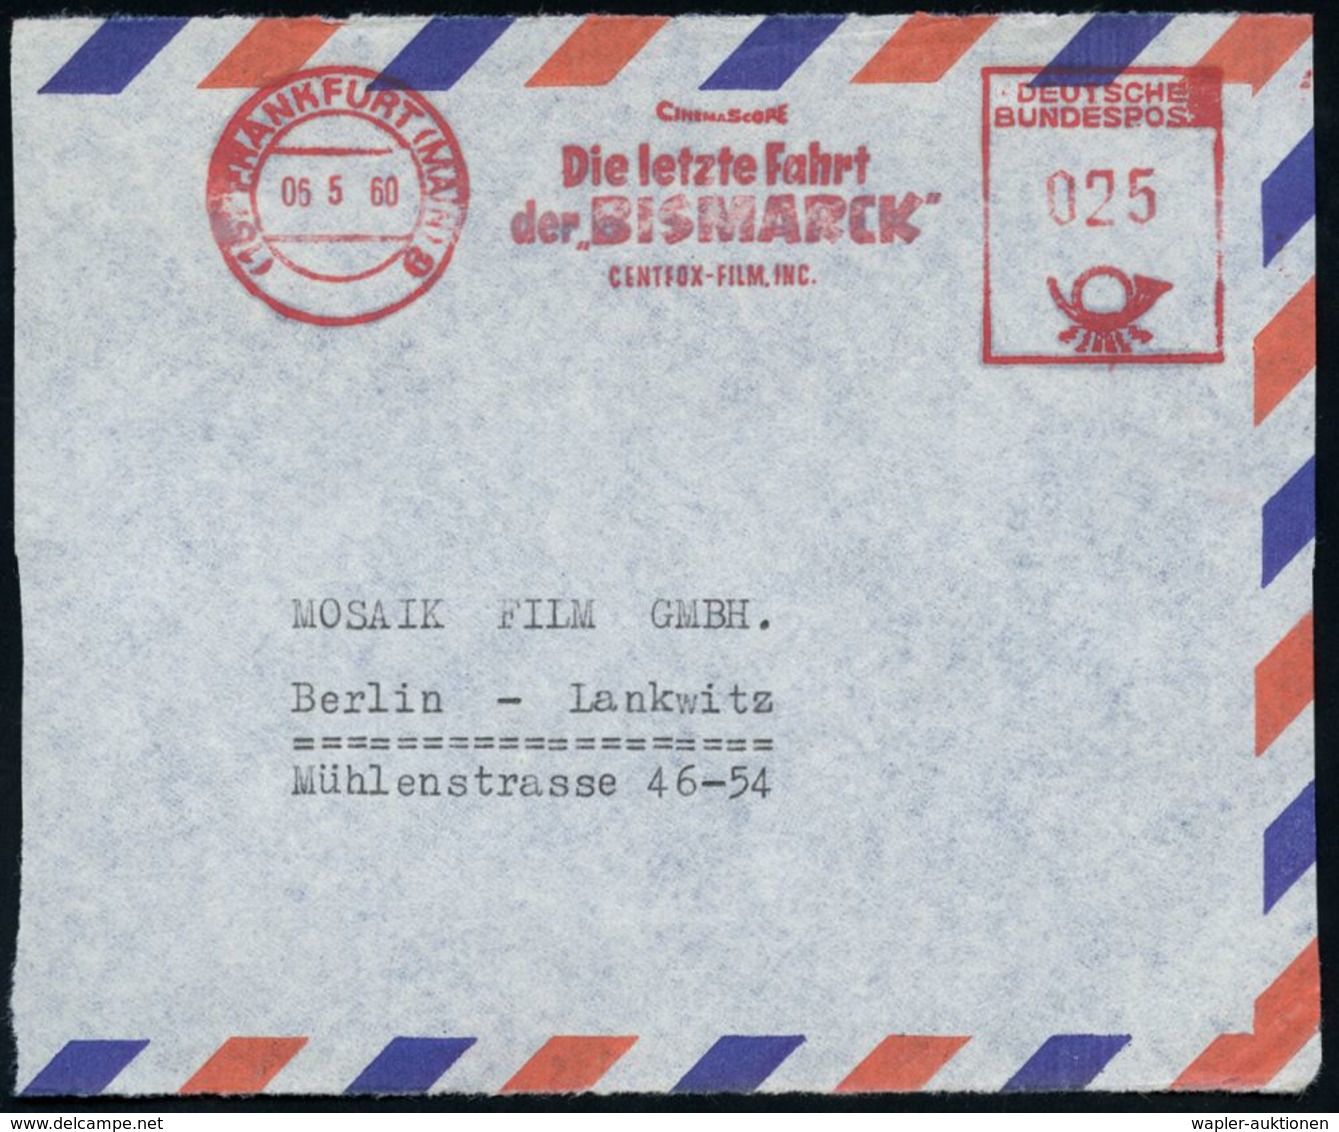 (16) FRANKFURT (MAIN) 9/ CINEMASCOPE/ Die Letzte Fahrt/ Der "BISMARCK"/ CENTFOX-FILM INC. 1960 (6.5.) Seltener AFS = Fil - Film